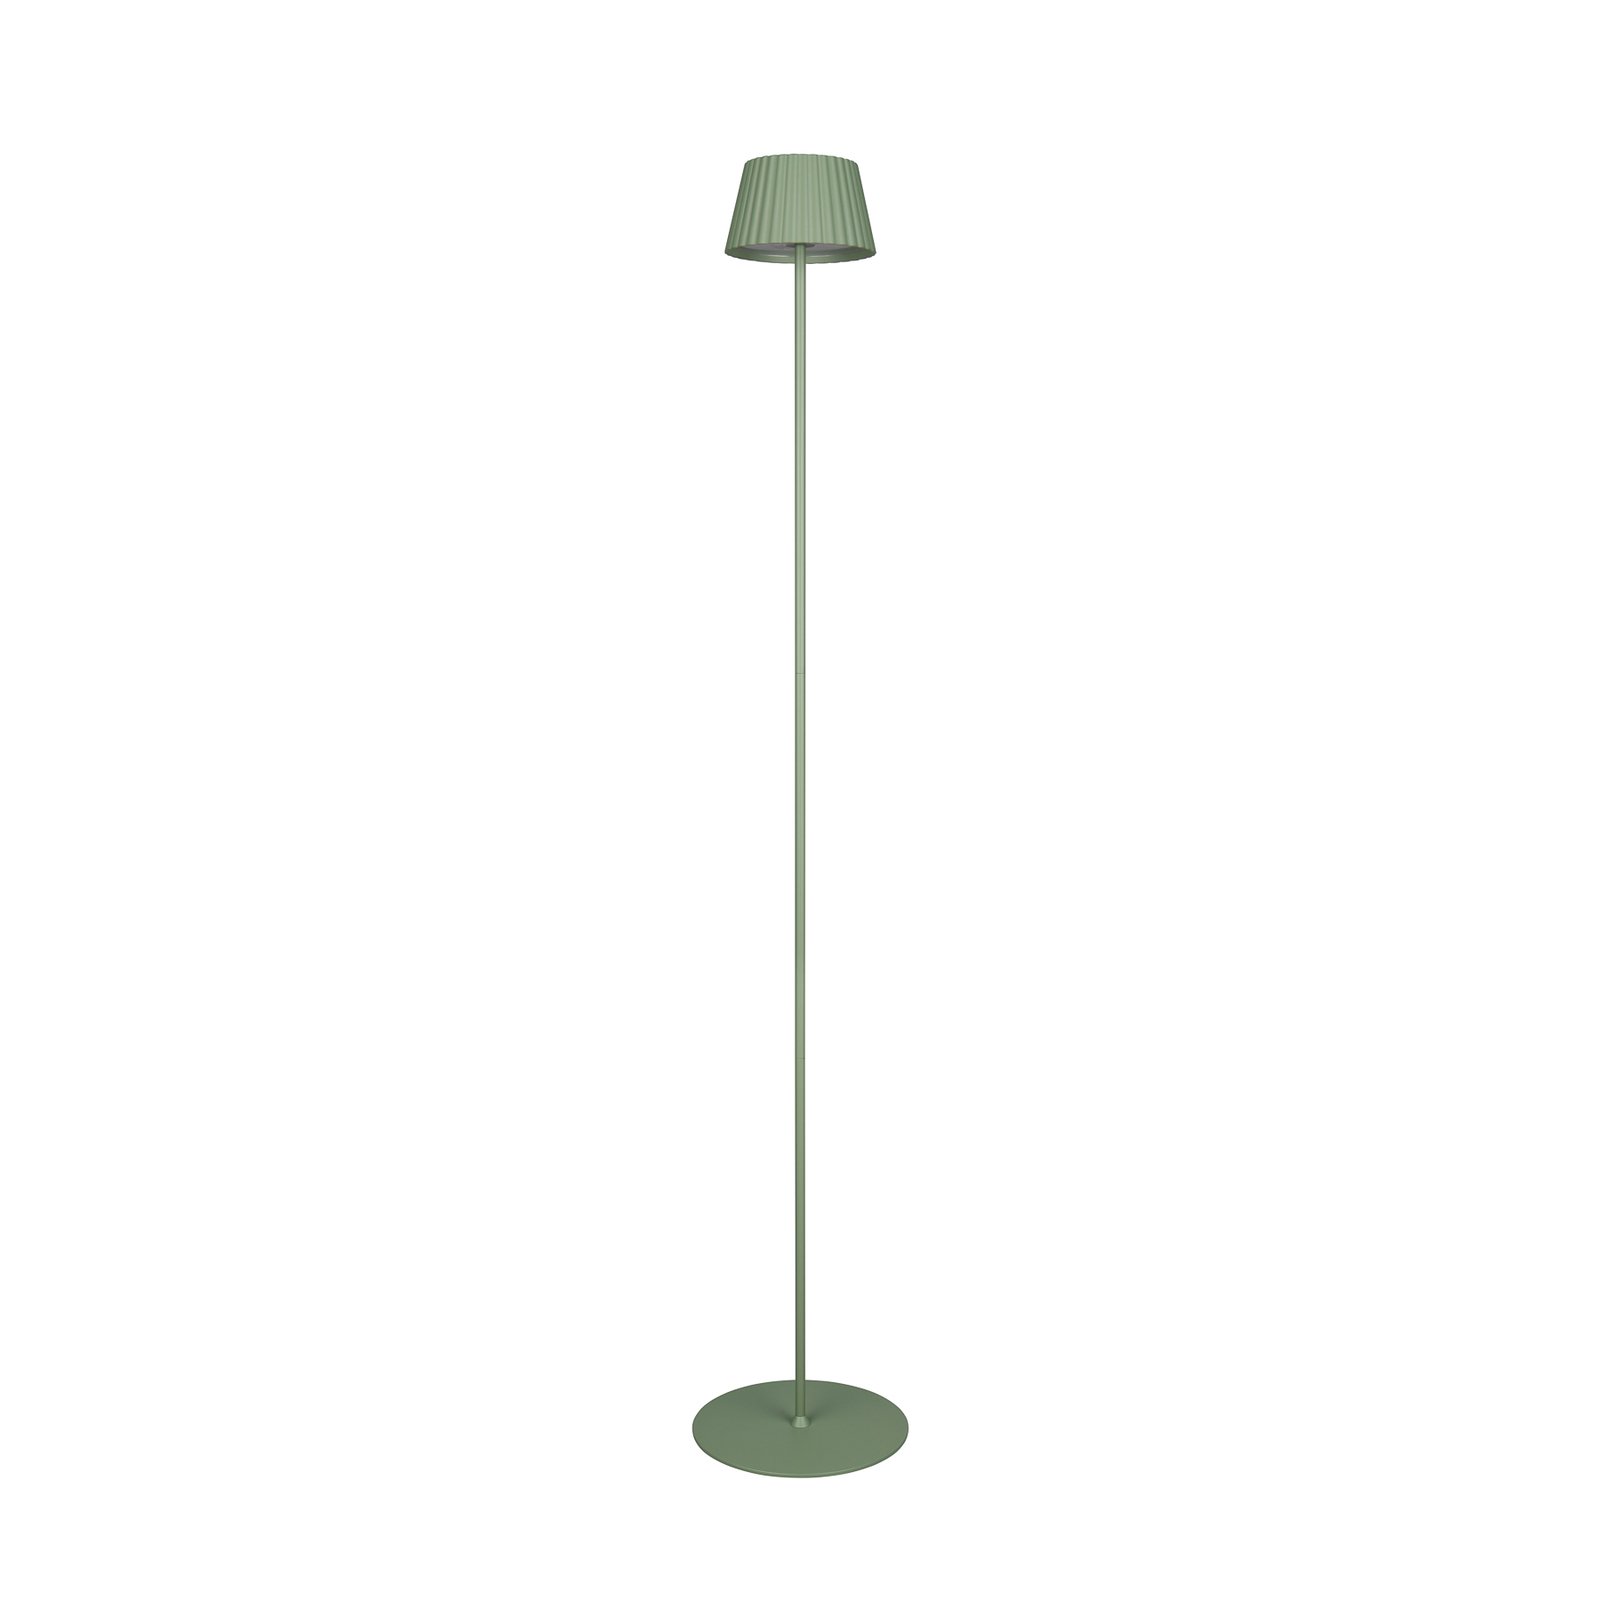 Stojacia lampa Suarez LED s dobíjaním, zelená, výška 123 cm, kov